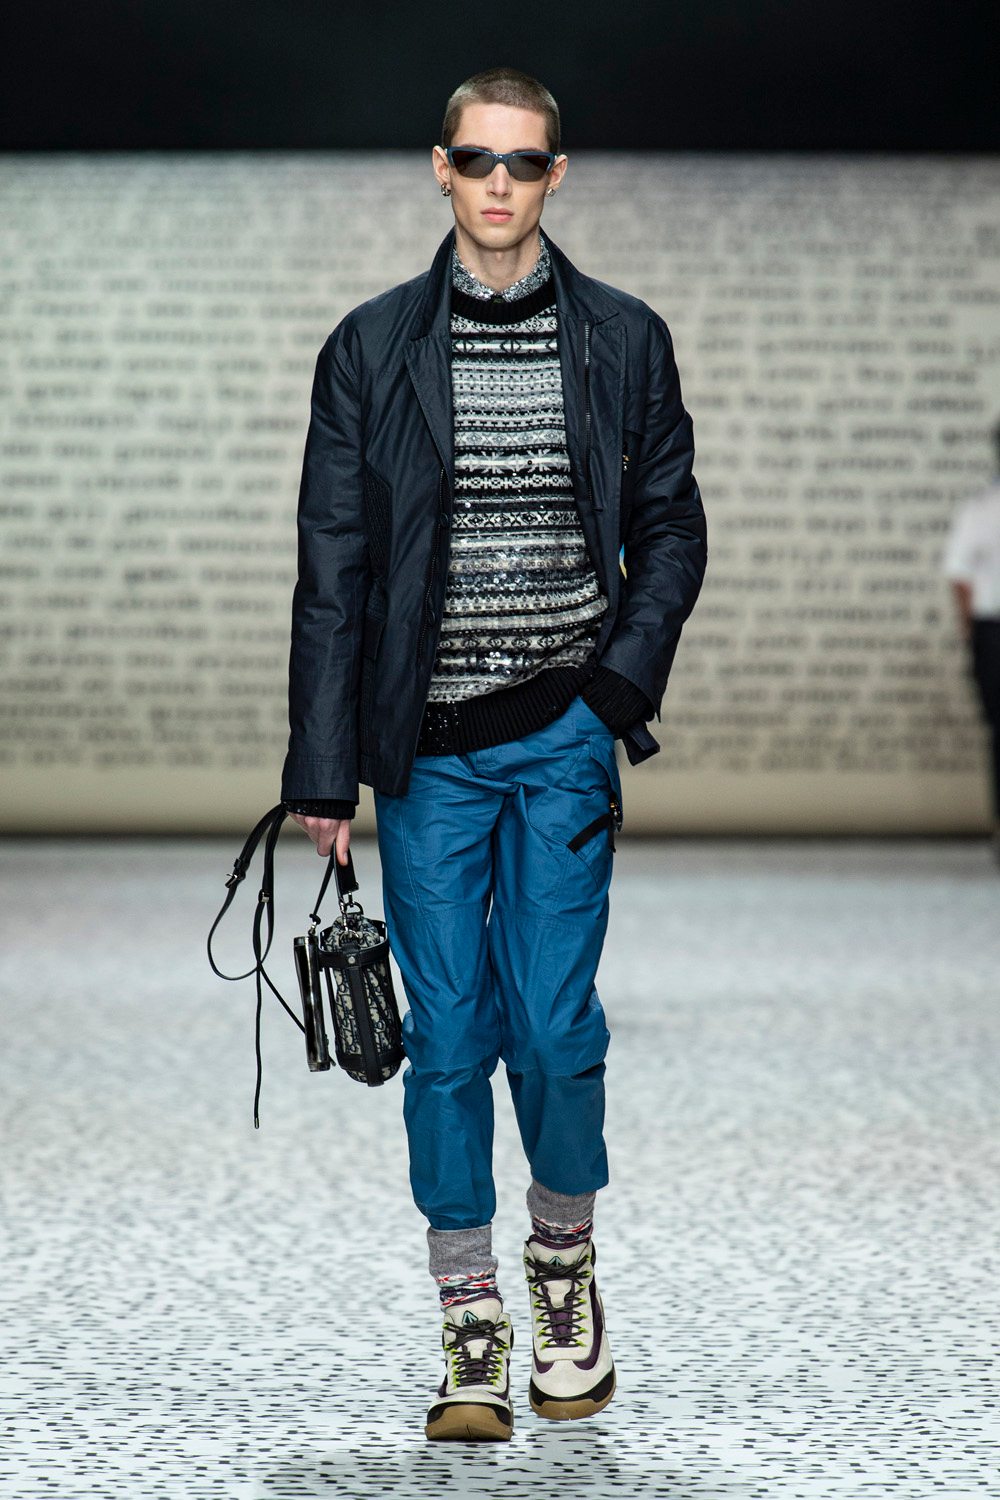 Dior homme fall 2022 célèbre l'écrivain Jack Kerouac